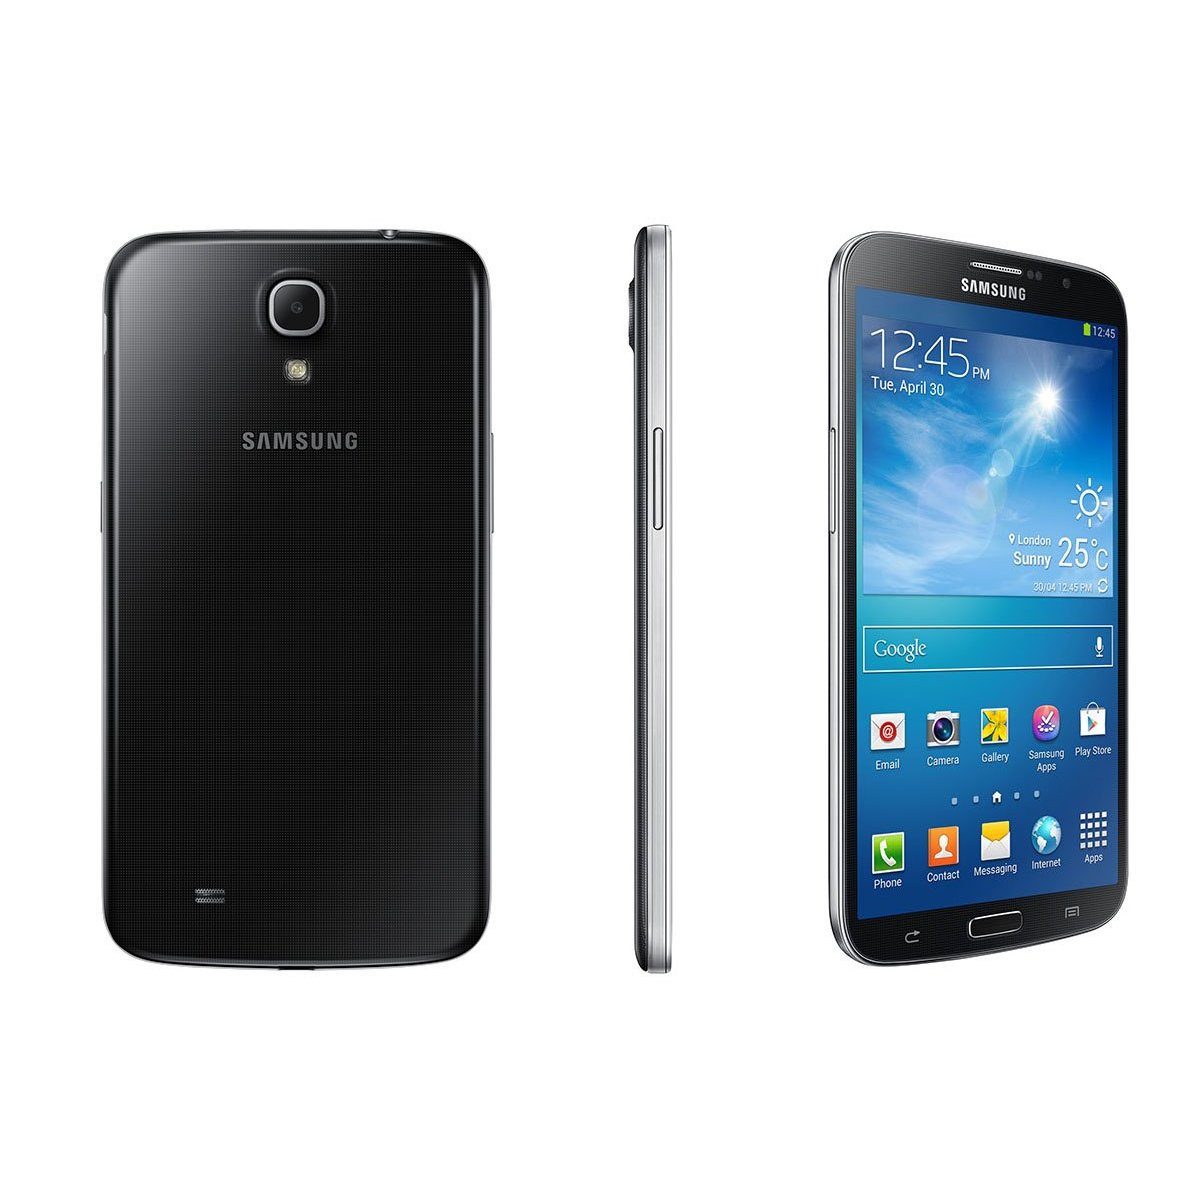 Samsung galaxy 5 3